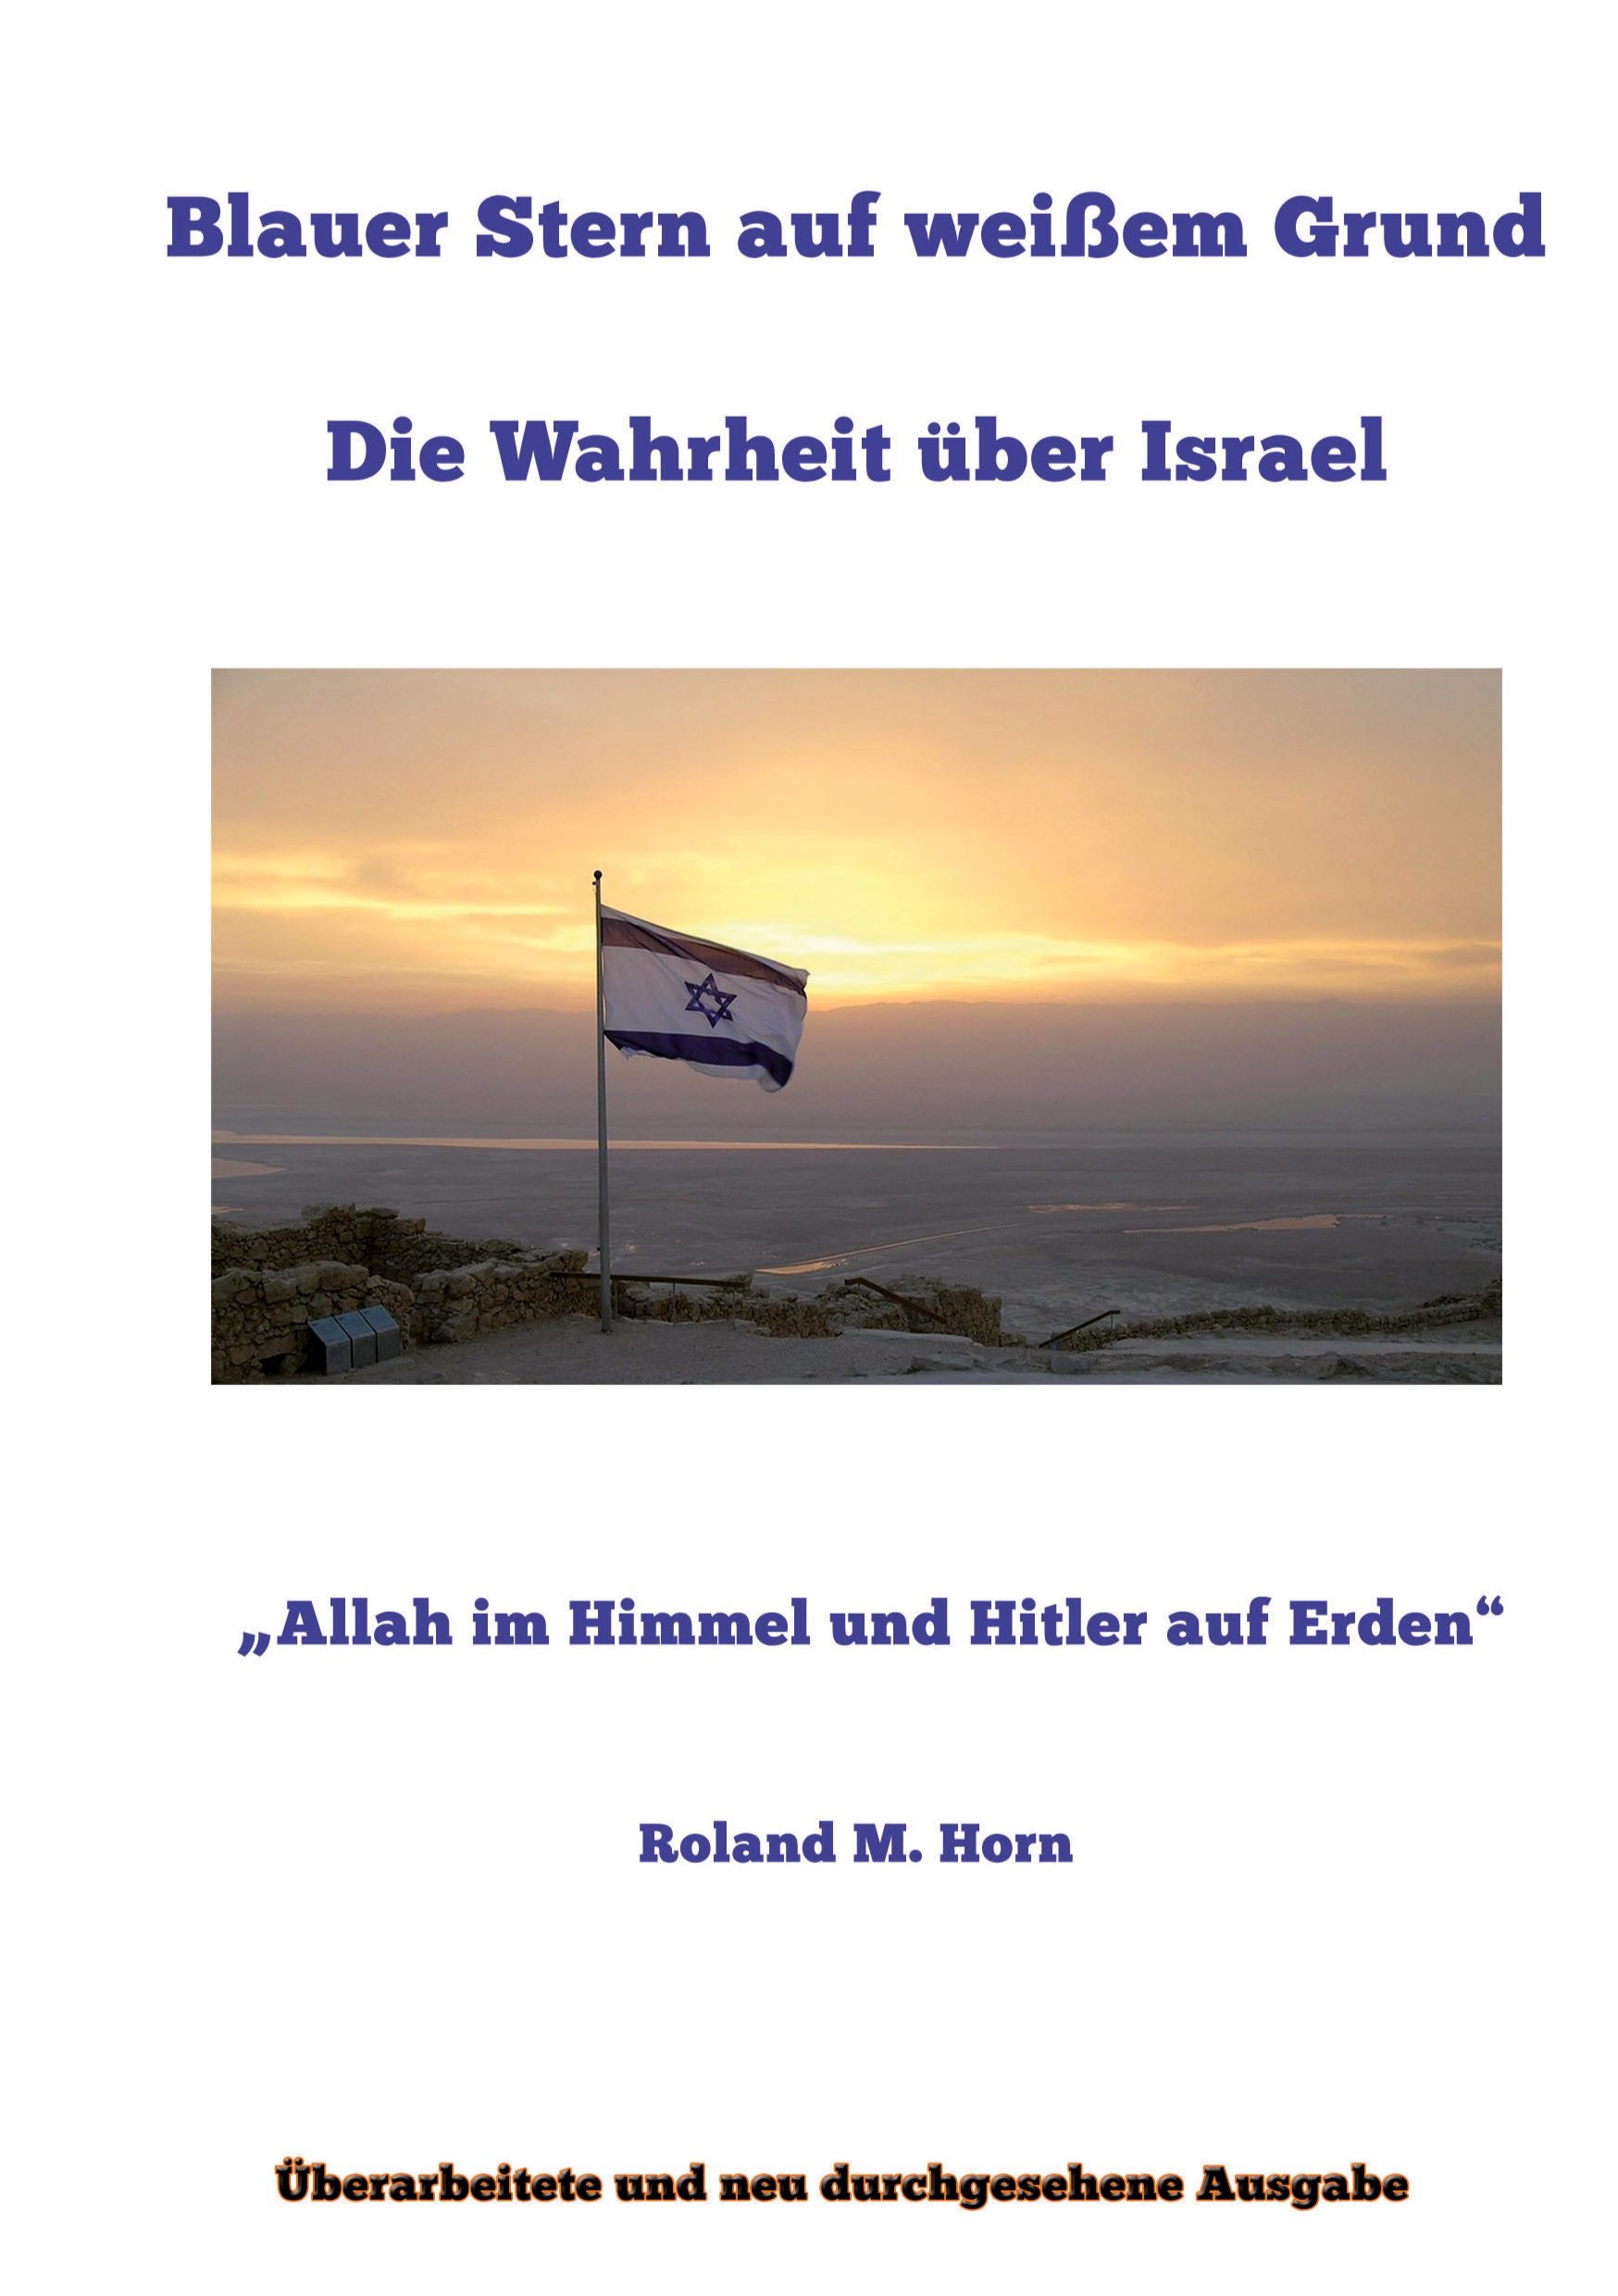 Roland M. Horn: Blauer Stern auf weiem Grund: Die Wahrheit ber Israel (Cover)